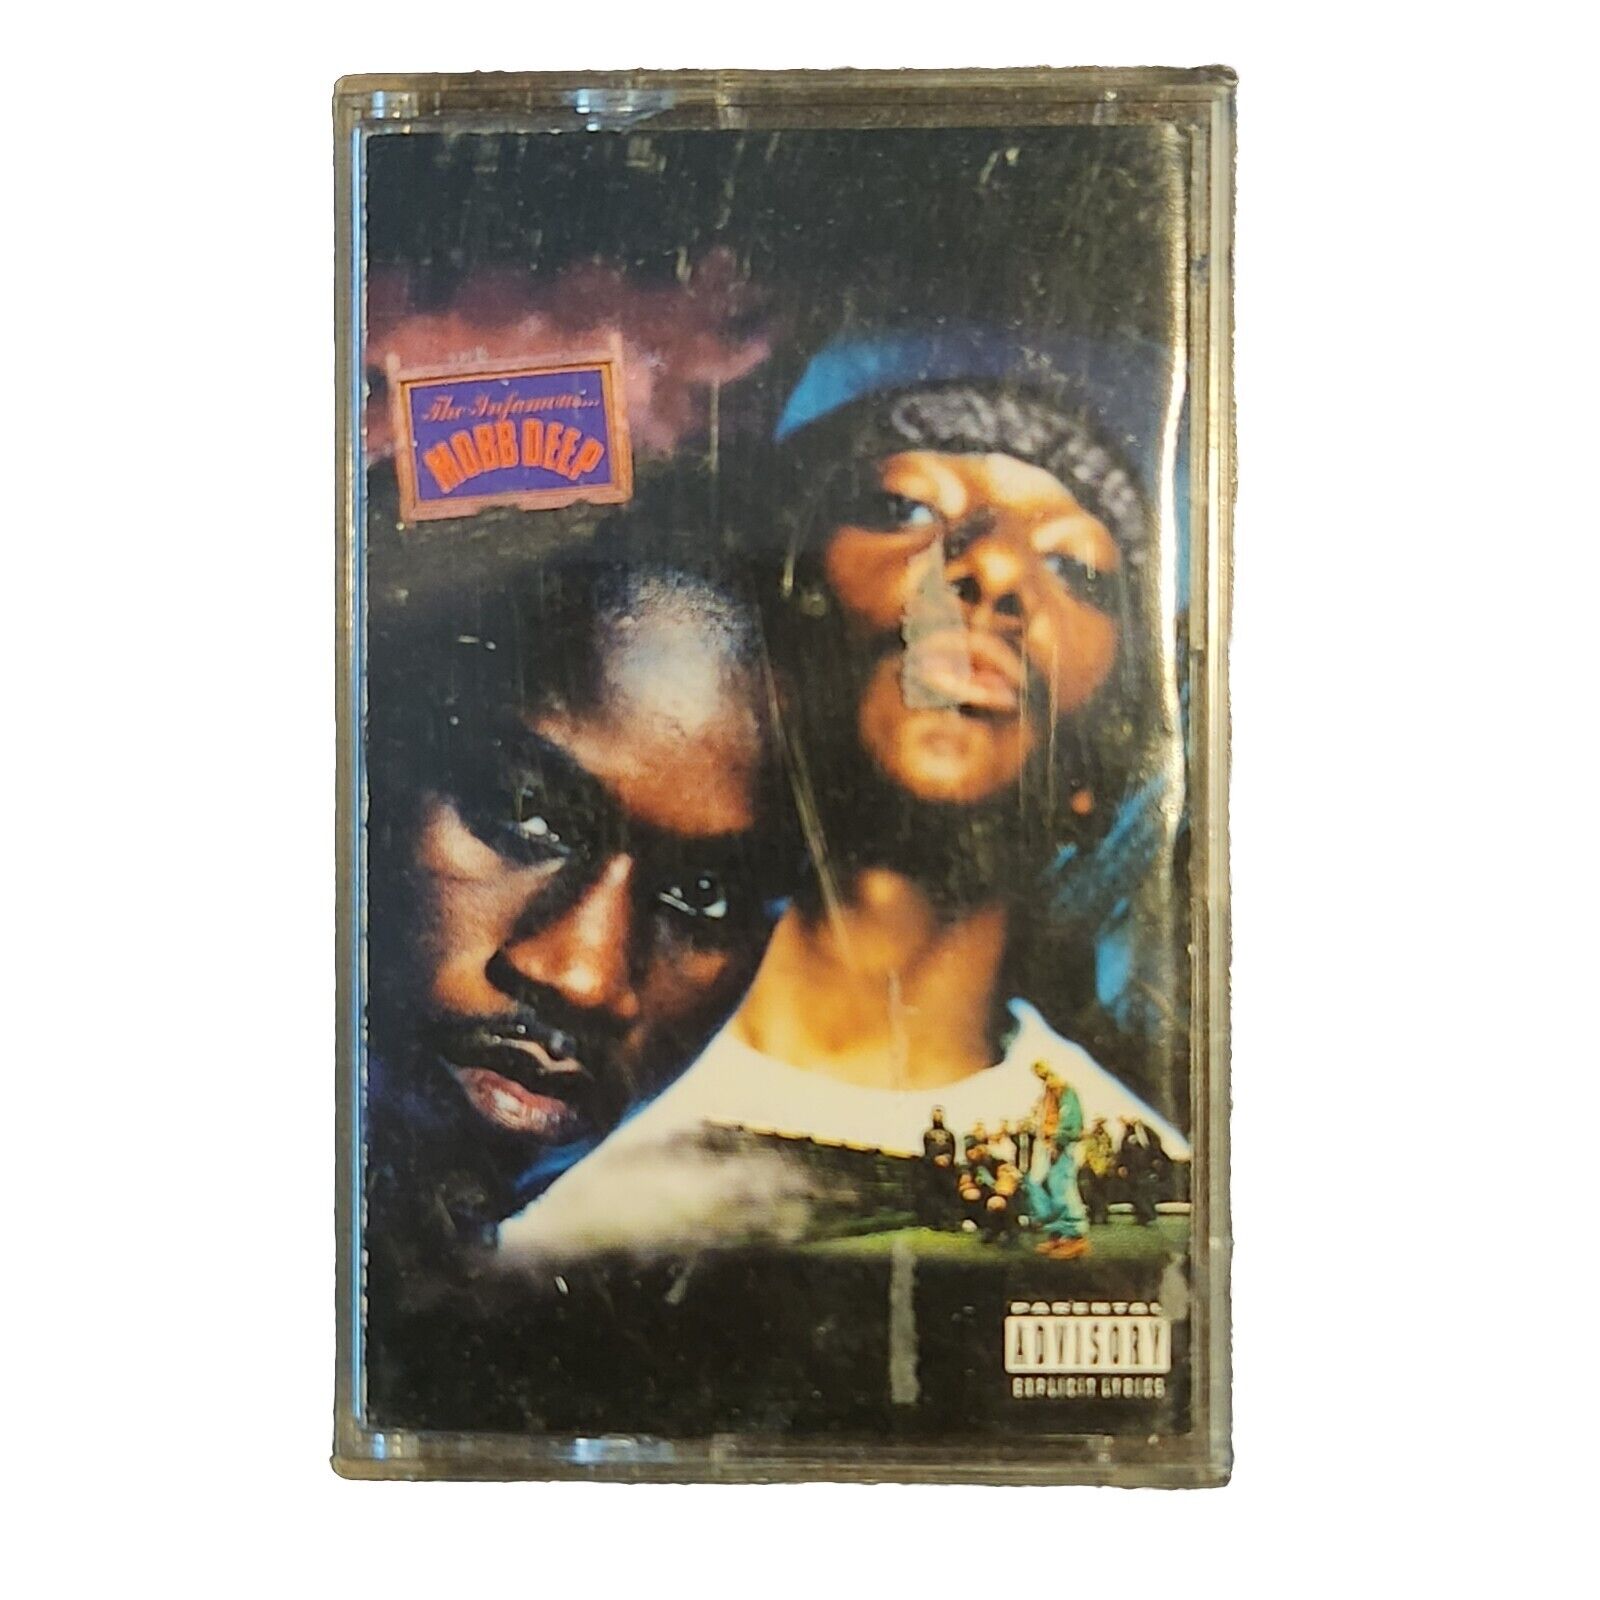 Mobb Deep The Infamous vintage (1995) audio cassette RARE